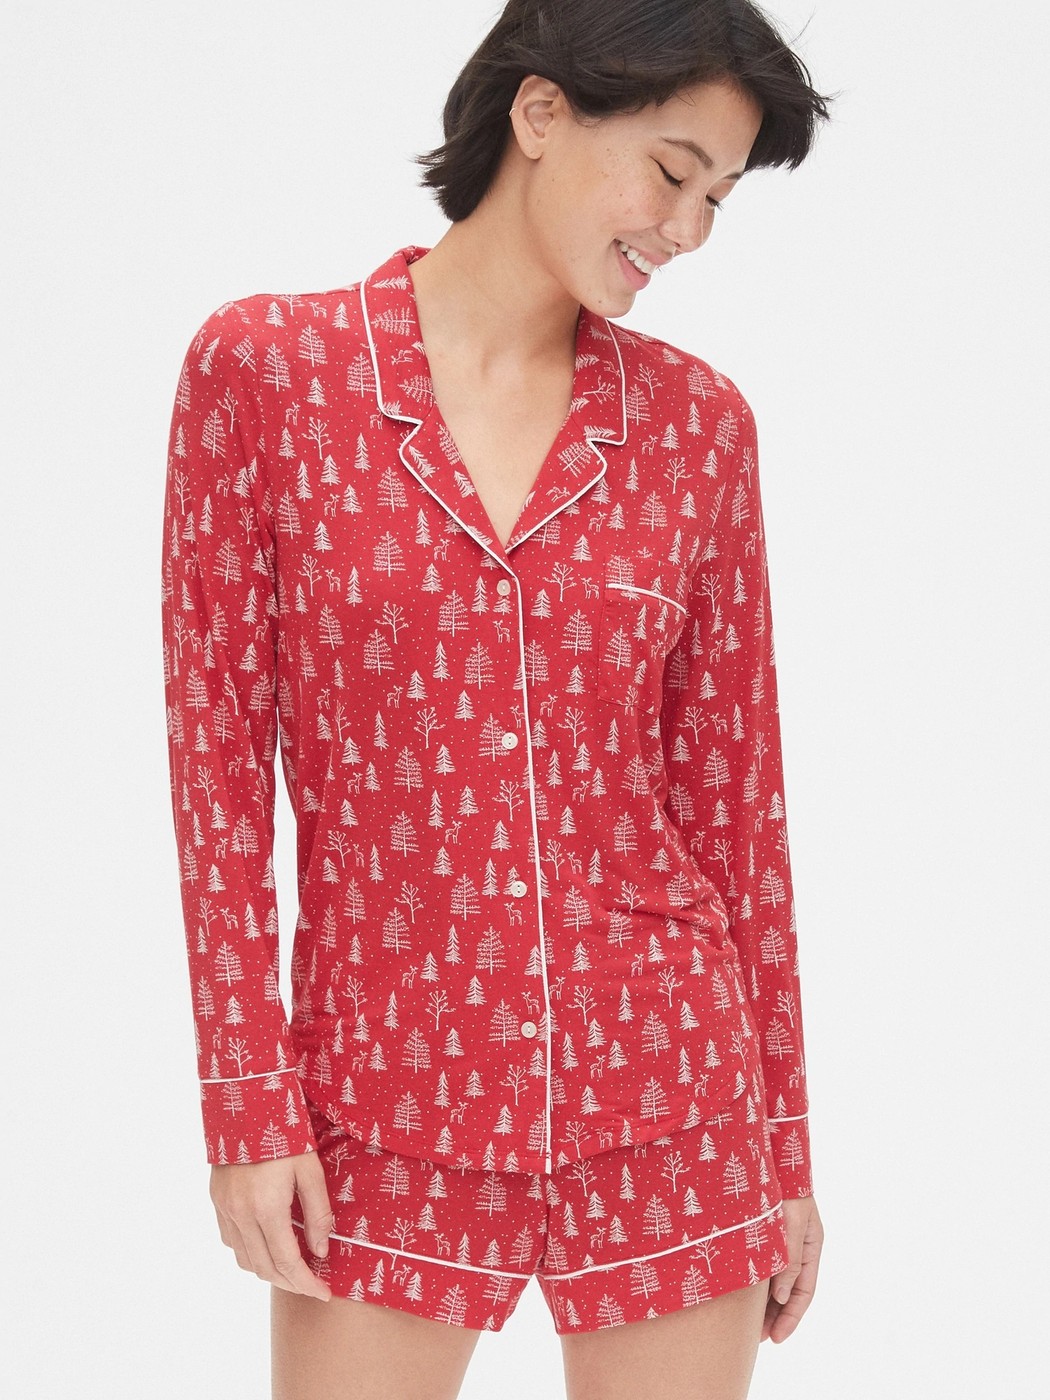 Женская пижама для сна GAP (Женская рубашка - рубашка, шорты), S, S